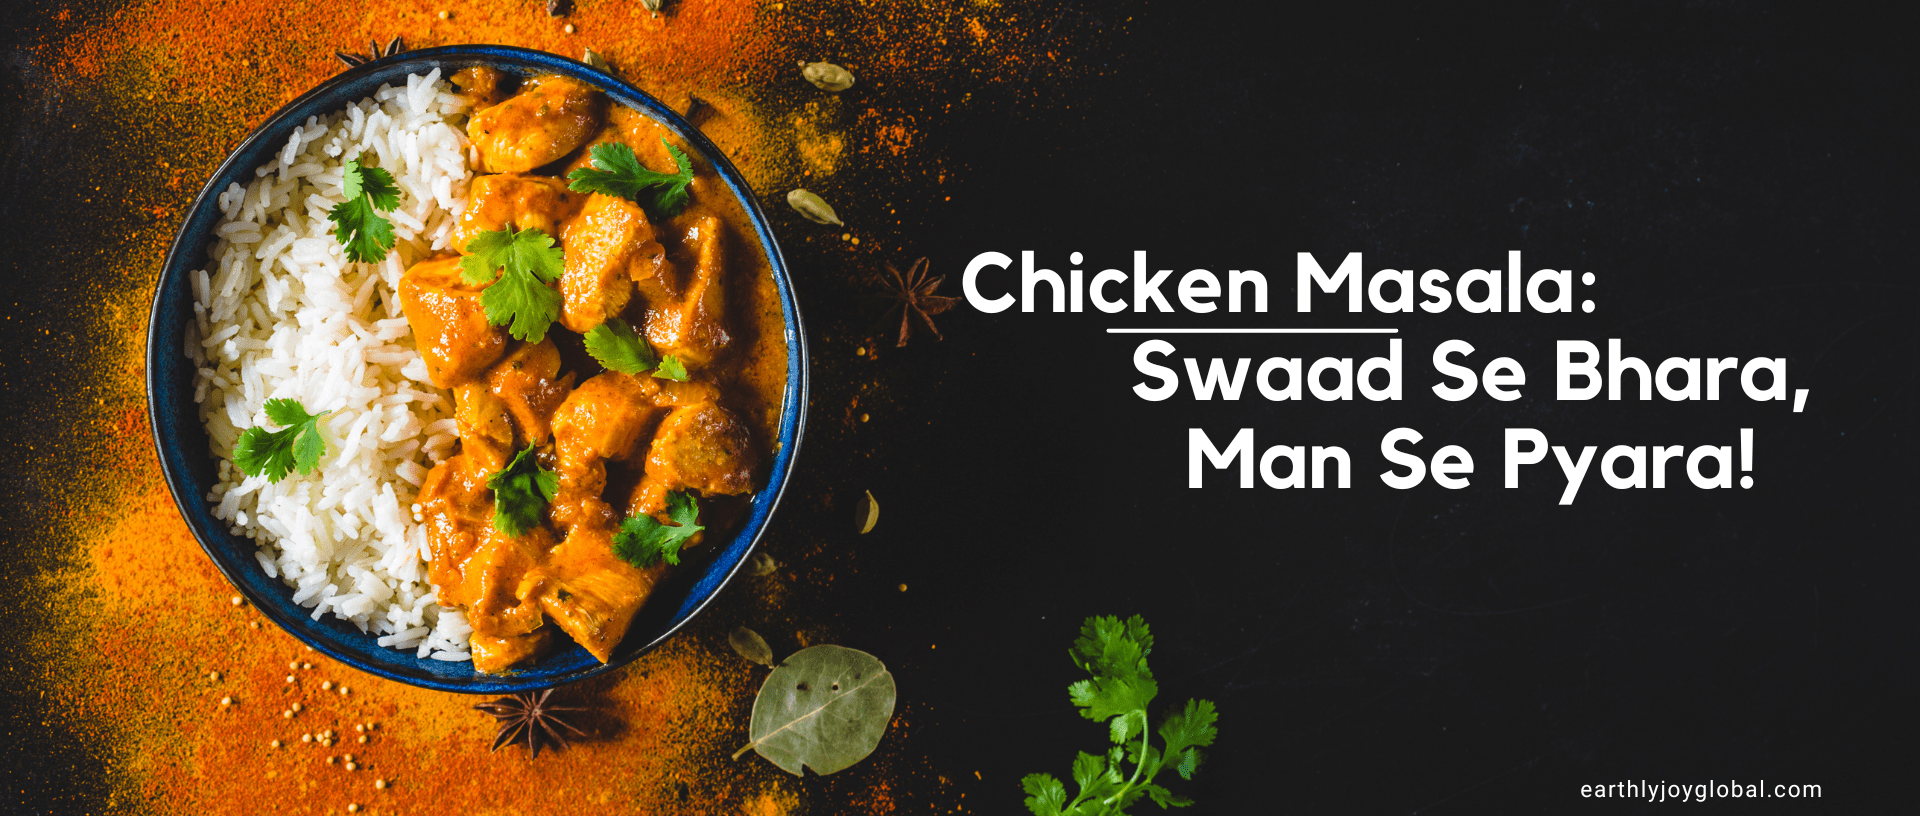 Chicken Masala: Swaad Se Bhara, Man Se Pyara!